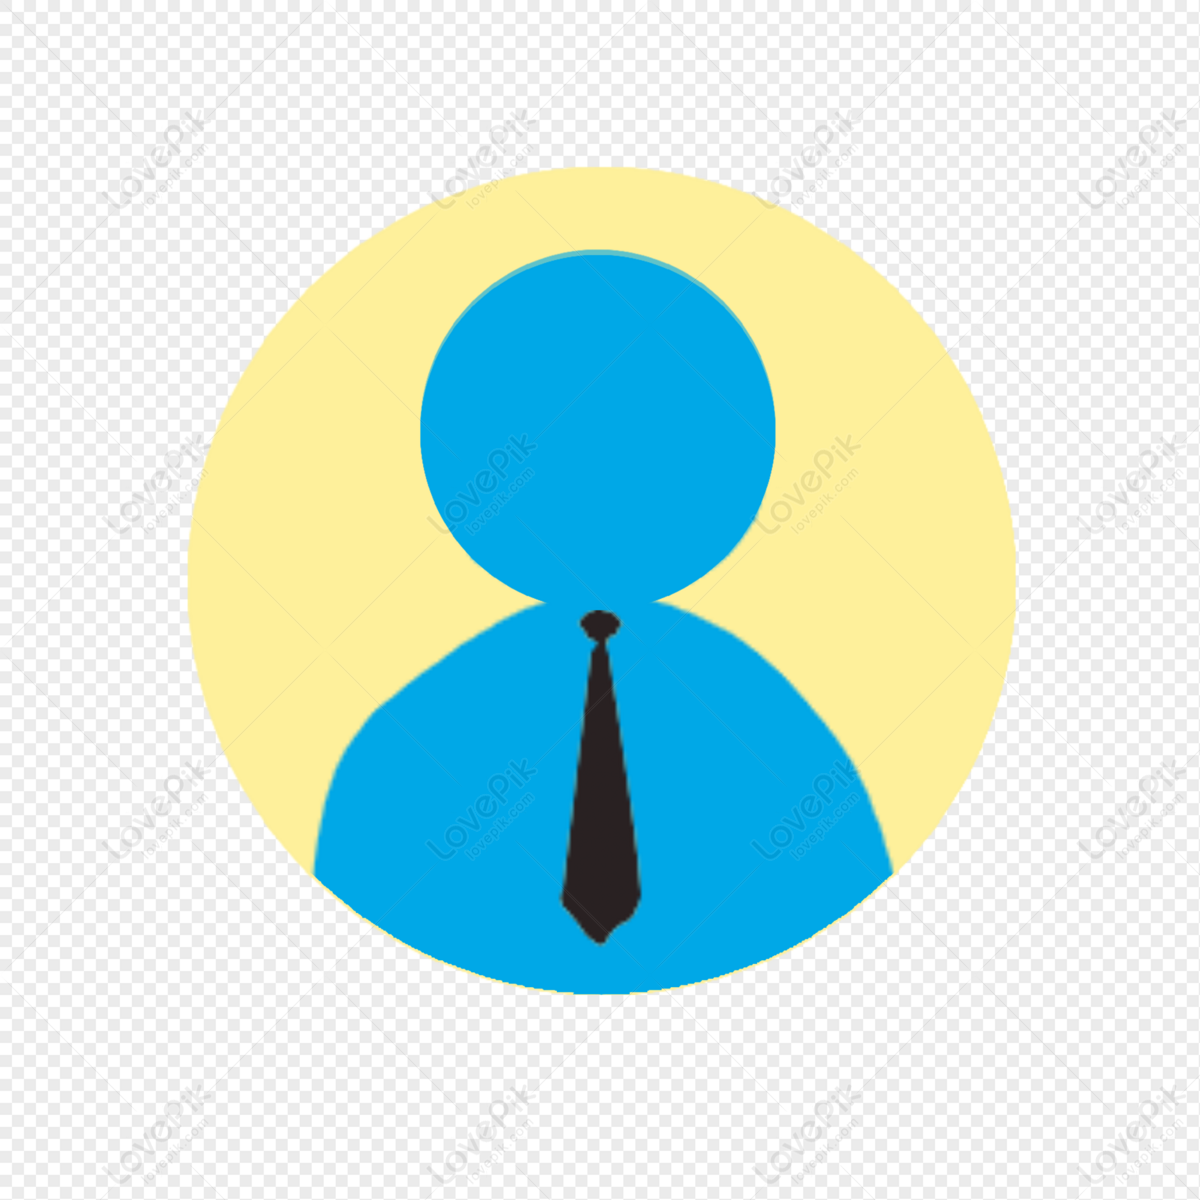 Transparent PNG avatar icon: Chúng tôi đã tung ra đến tay người dùng những hình ảnh avatar hoàn toàn trong suốt chỉ với một file PNG đơn giản. Tận dụng tính năng này để tạo nên lỗi một bức hình độc đáo mà không cần quan tâm đế độ nền.